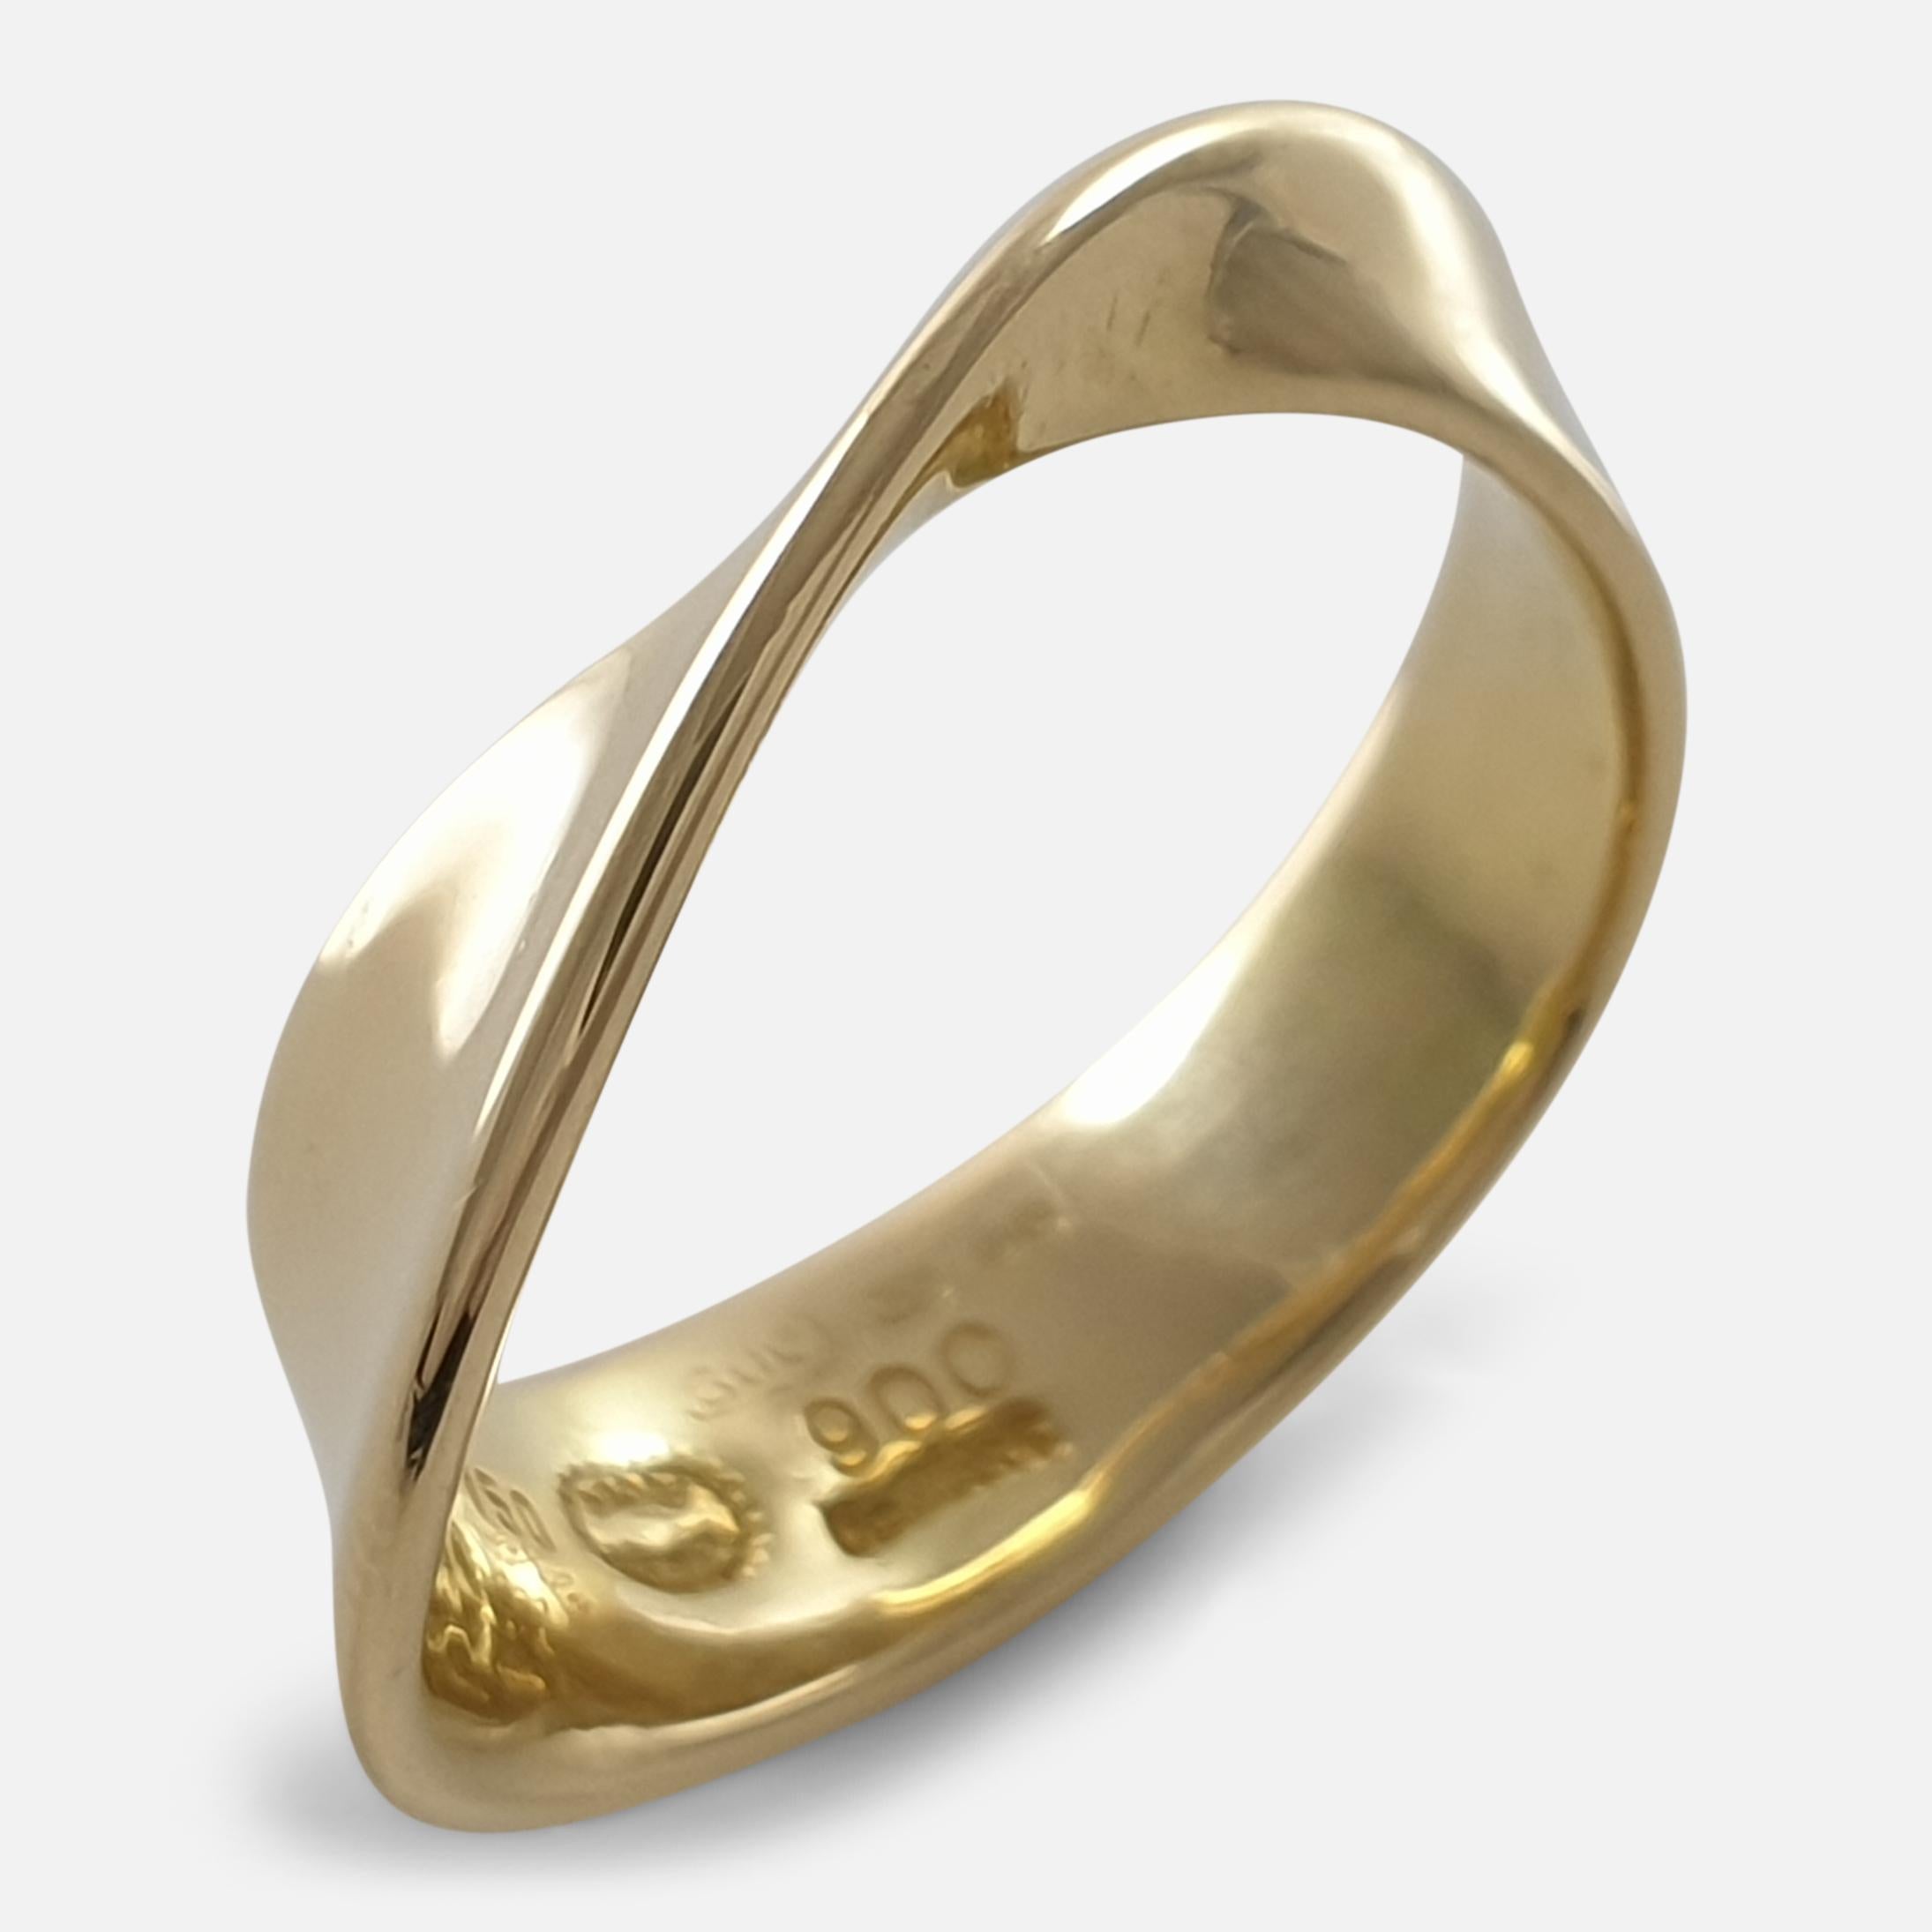 18 Carat Yellow Gold MÖBIUS Ring, No. 900, Georg Jensen 2